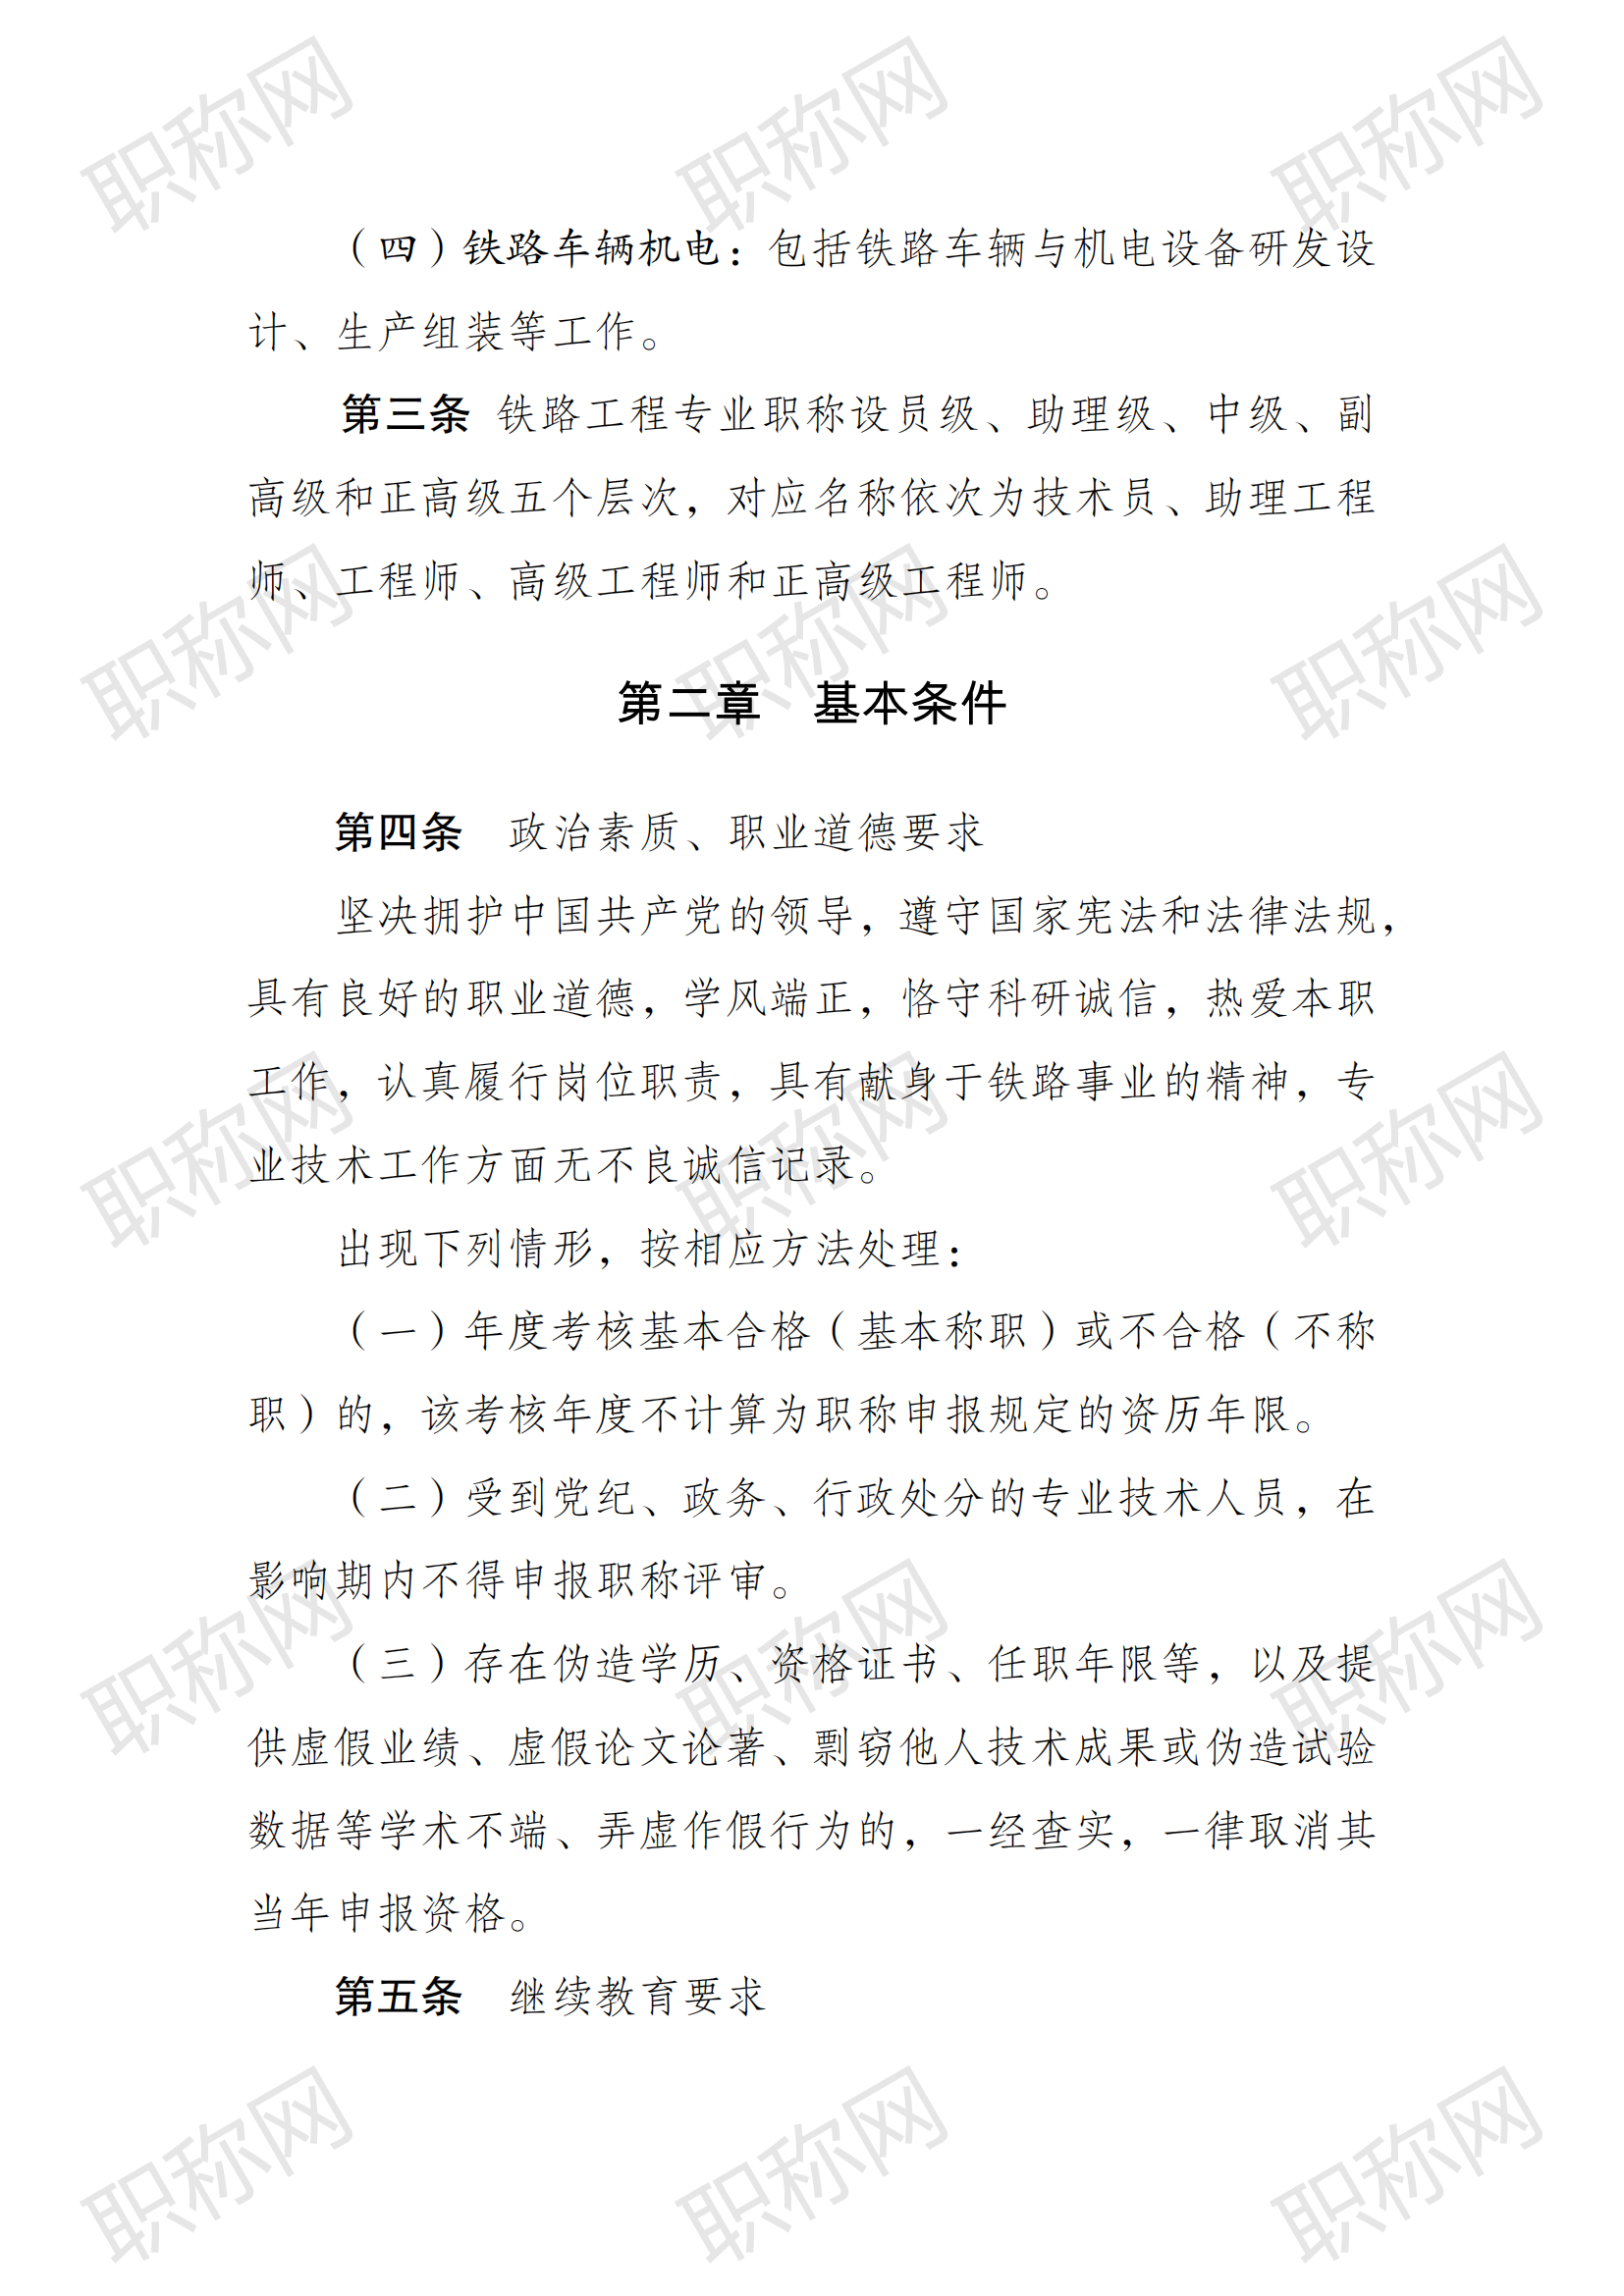 关于印发《江苏省铁路工程专业技术资格条件（试行）》的通知_01.png